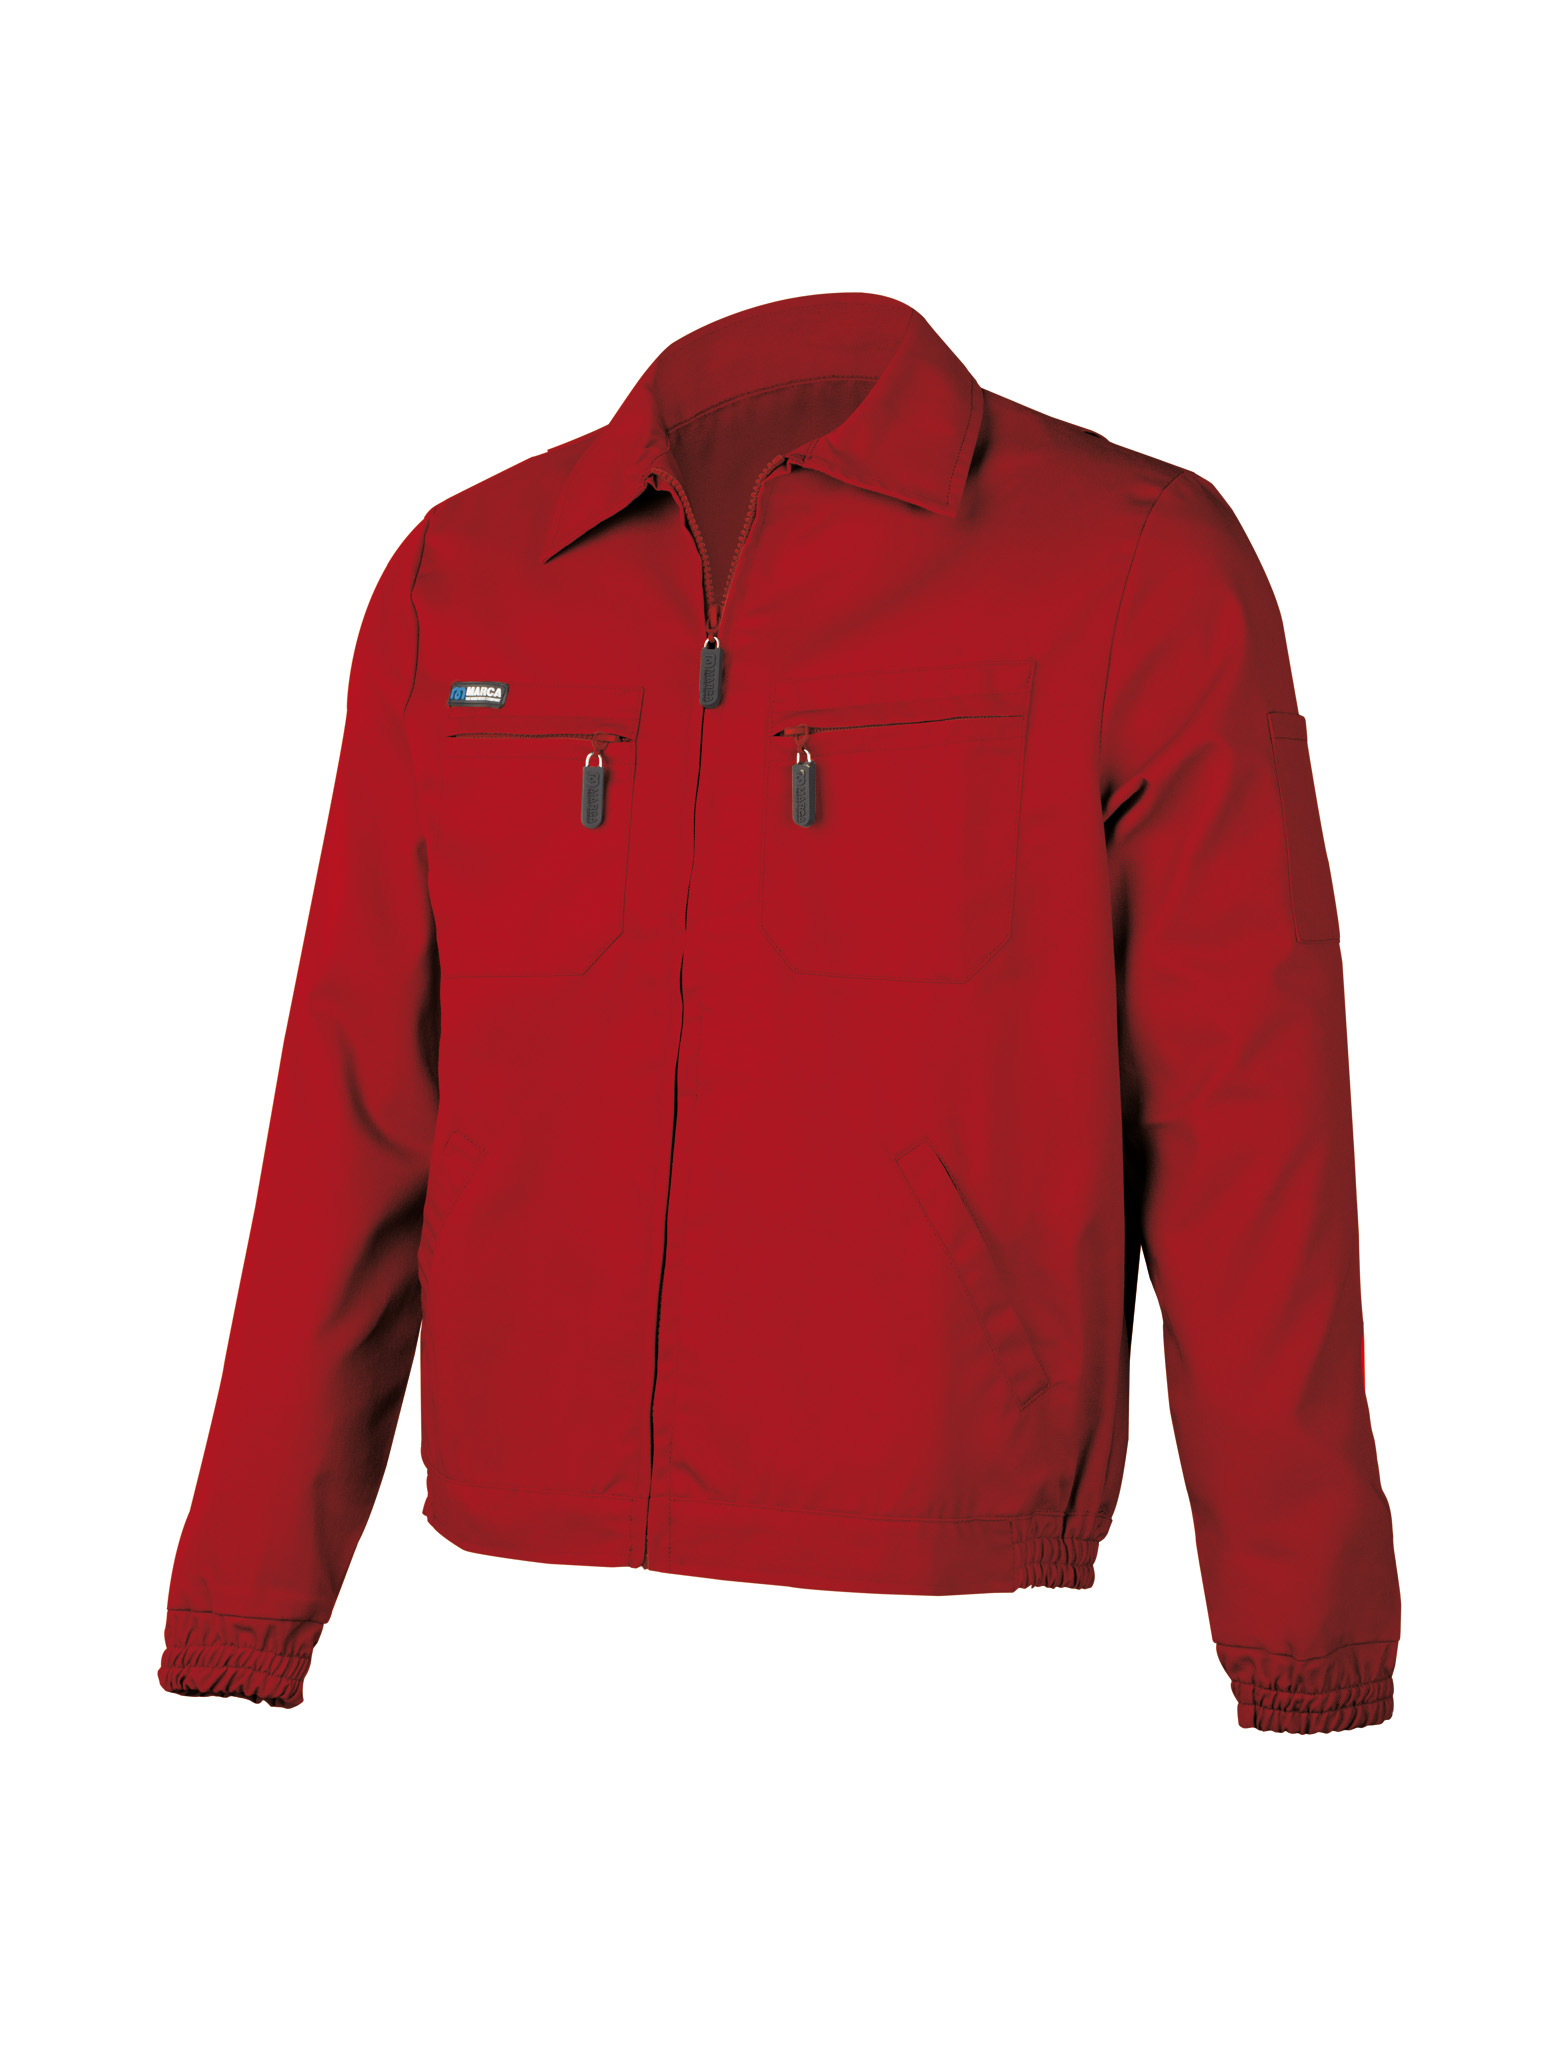 488-CR Top Workwear Top Series Tergal. Red.